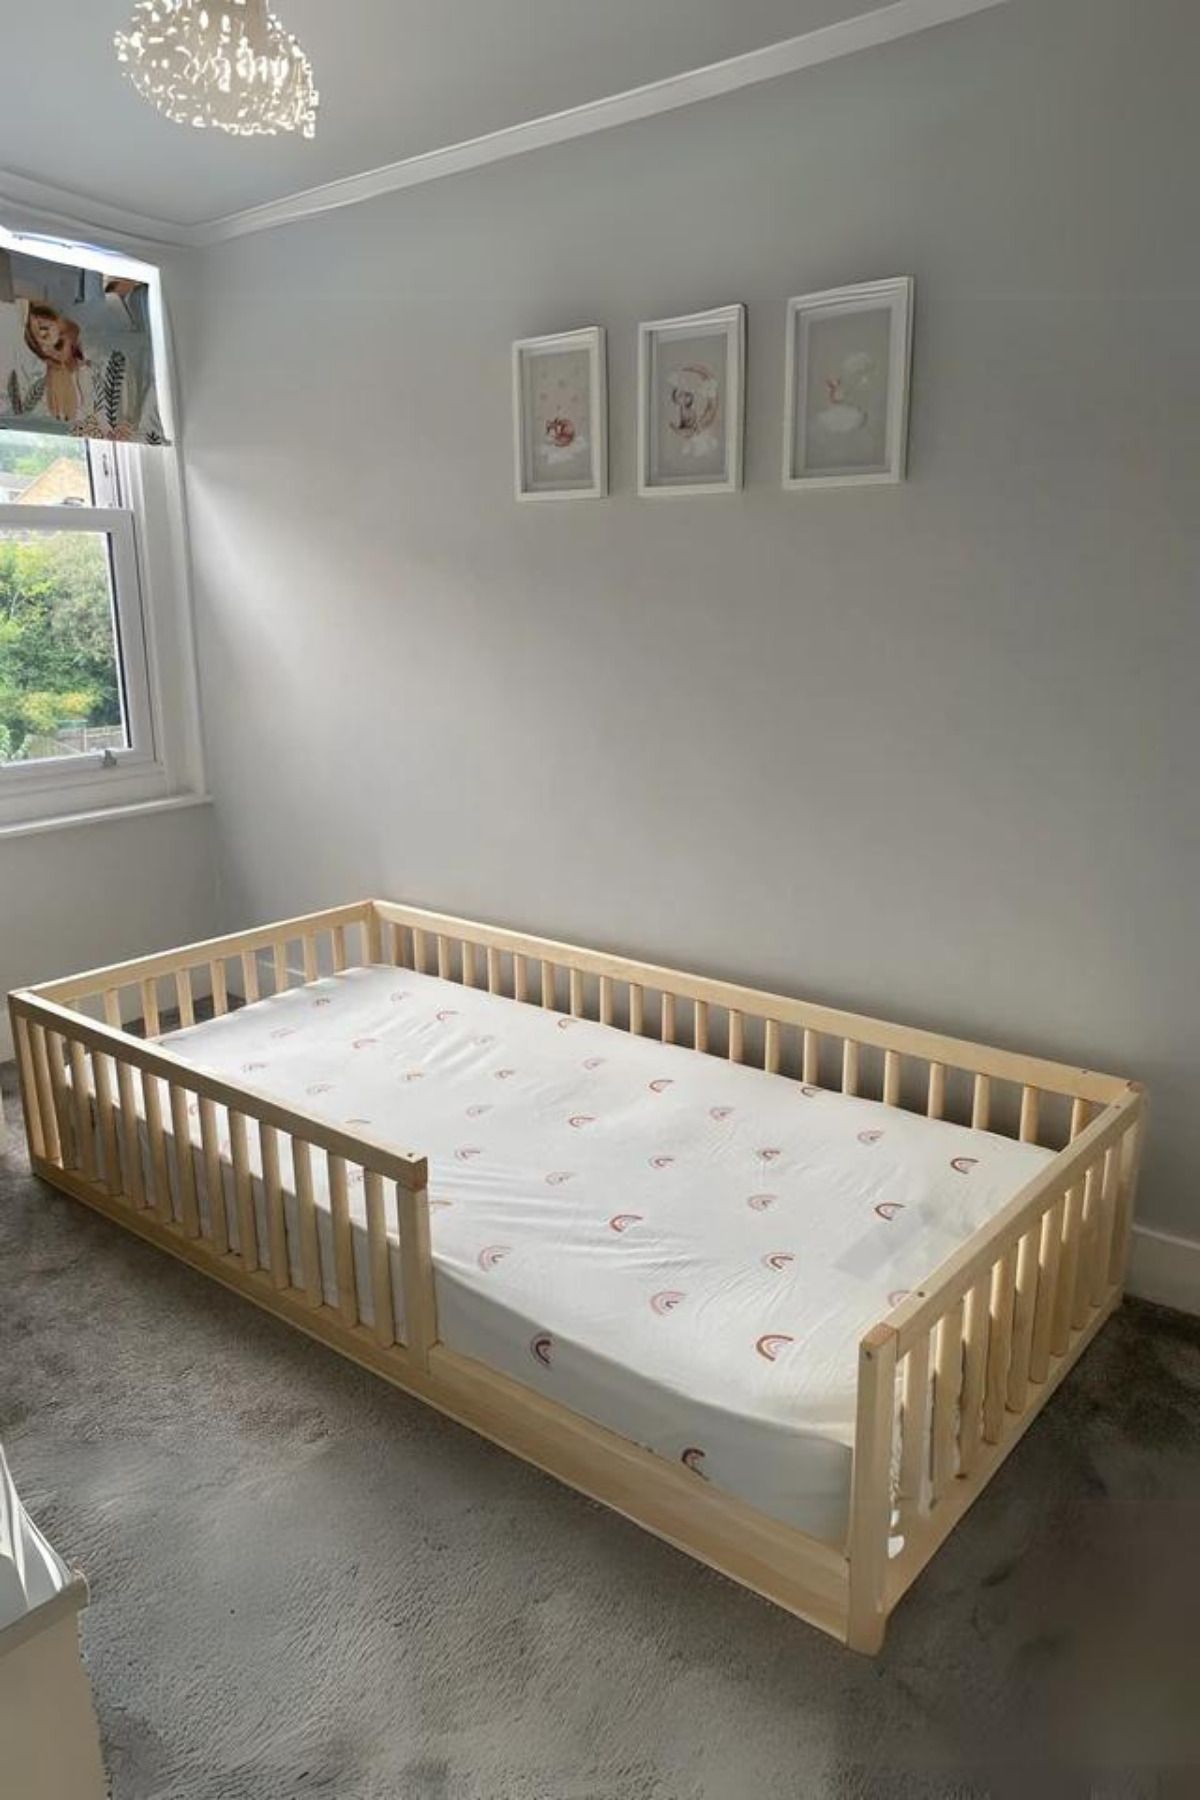 Alyones Tüm Ölçülerde Montessori Ahşap Bebek ve Çocuk Yatağı - Unisex Karyola - Doğal Ahşap Yatak